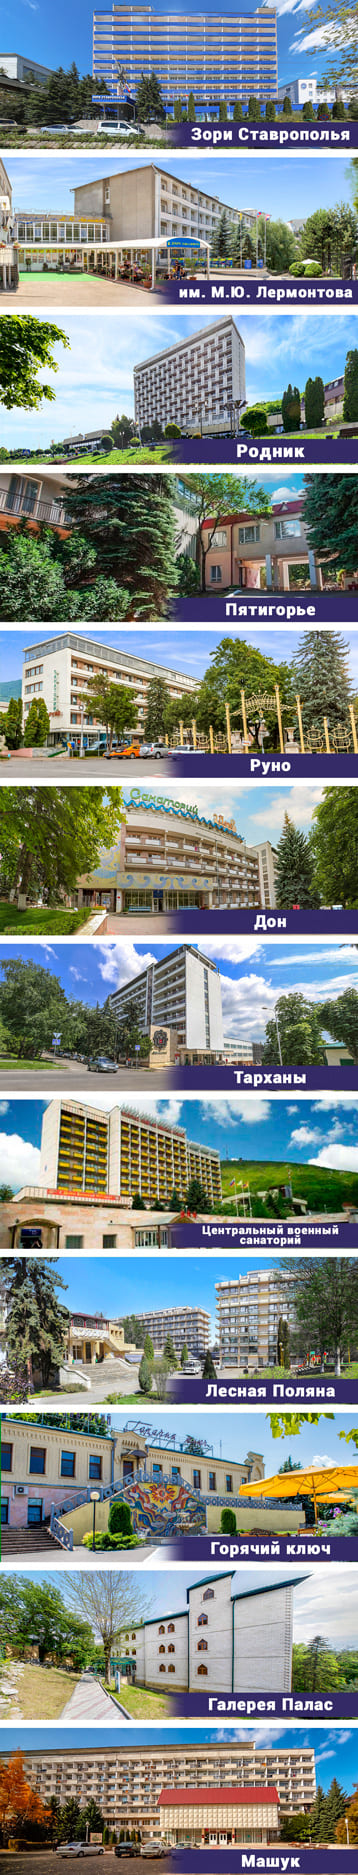 Недорогие санатории в Пятигорске